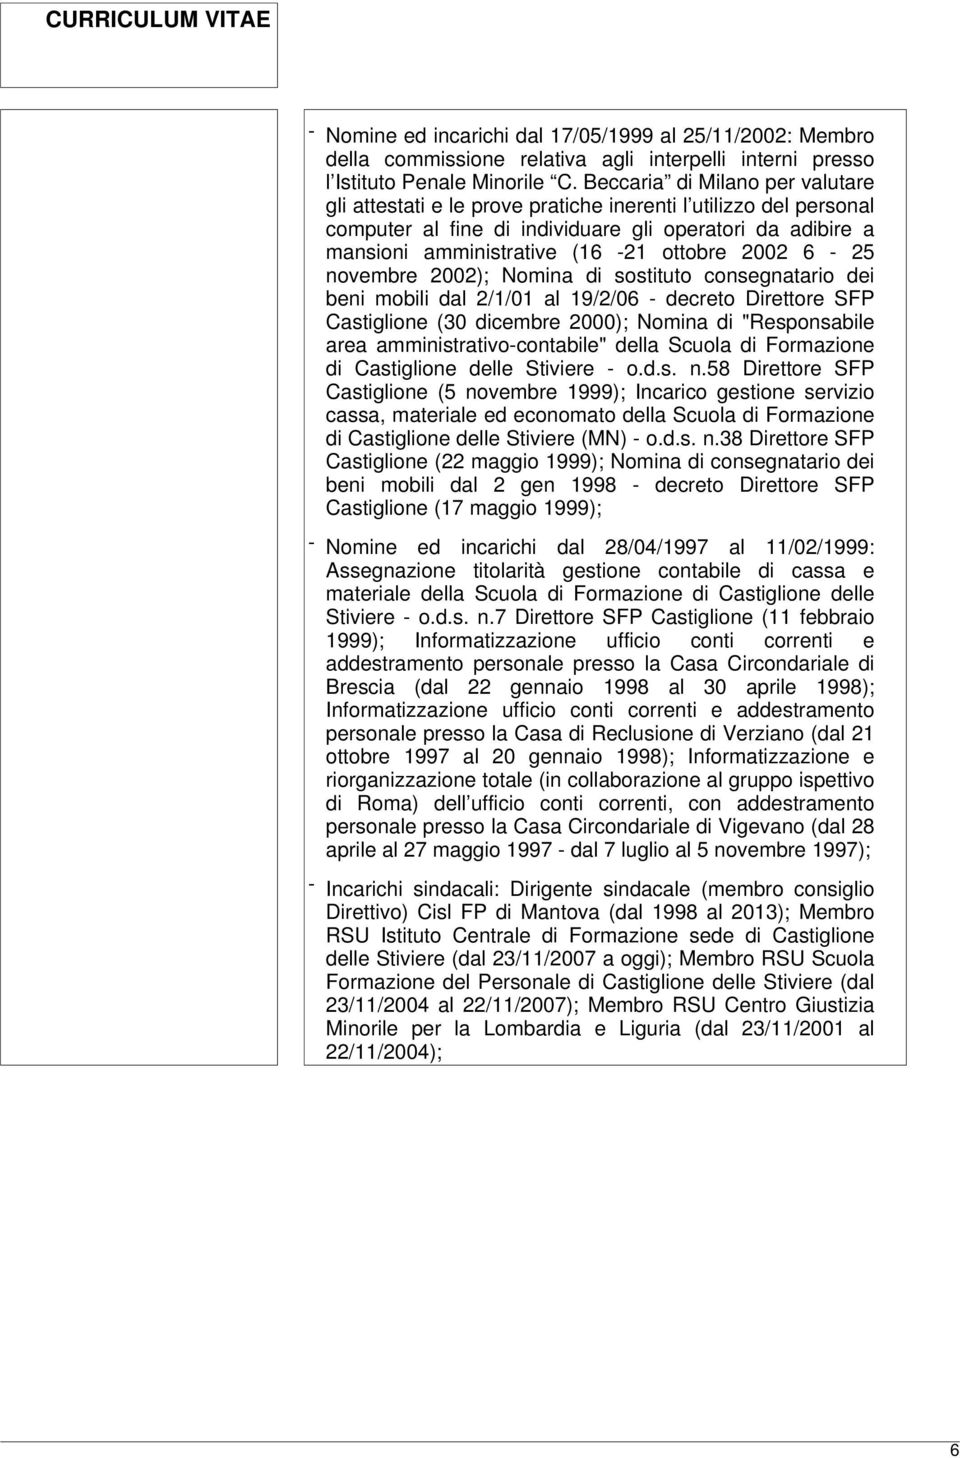 2002 6-25 novembre 2002); Nomina di sostituto consegnatario dei beni mobili dal 2/1/01 al 19/2/06 - decreto Direttore SFP Castiglione (30 dicembre 2000); Nomina di "Responsabile area